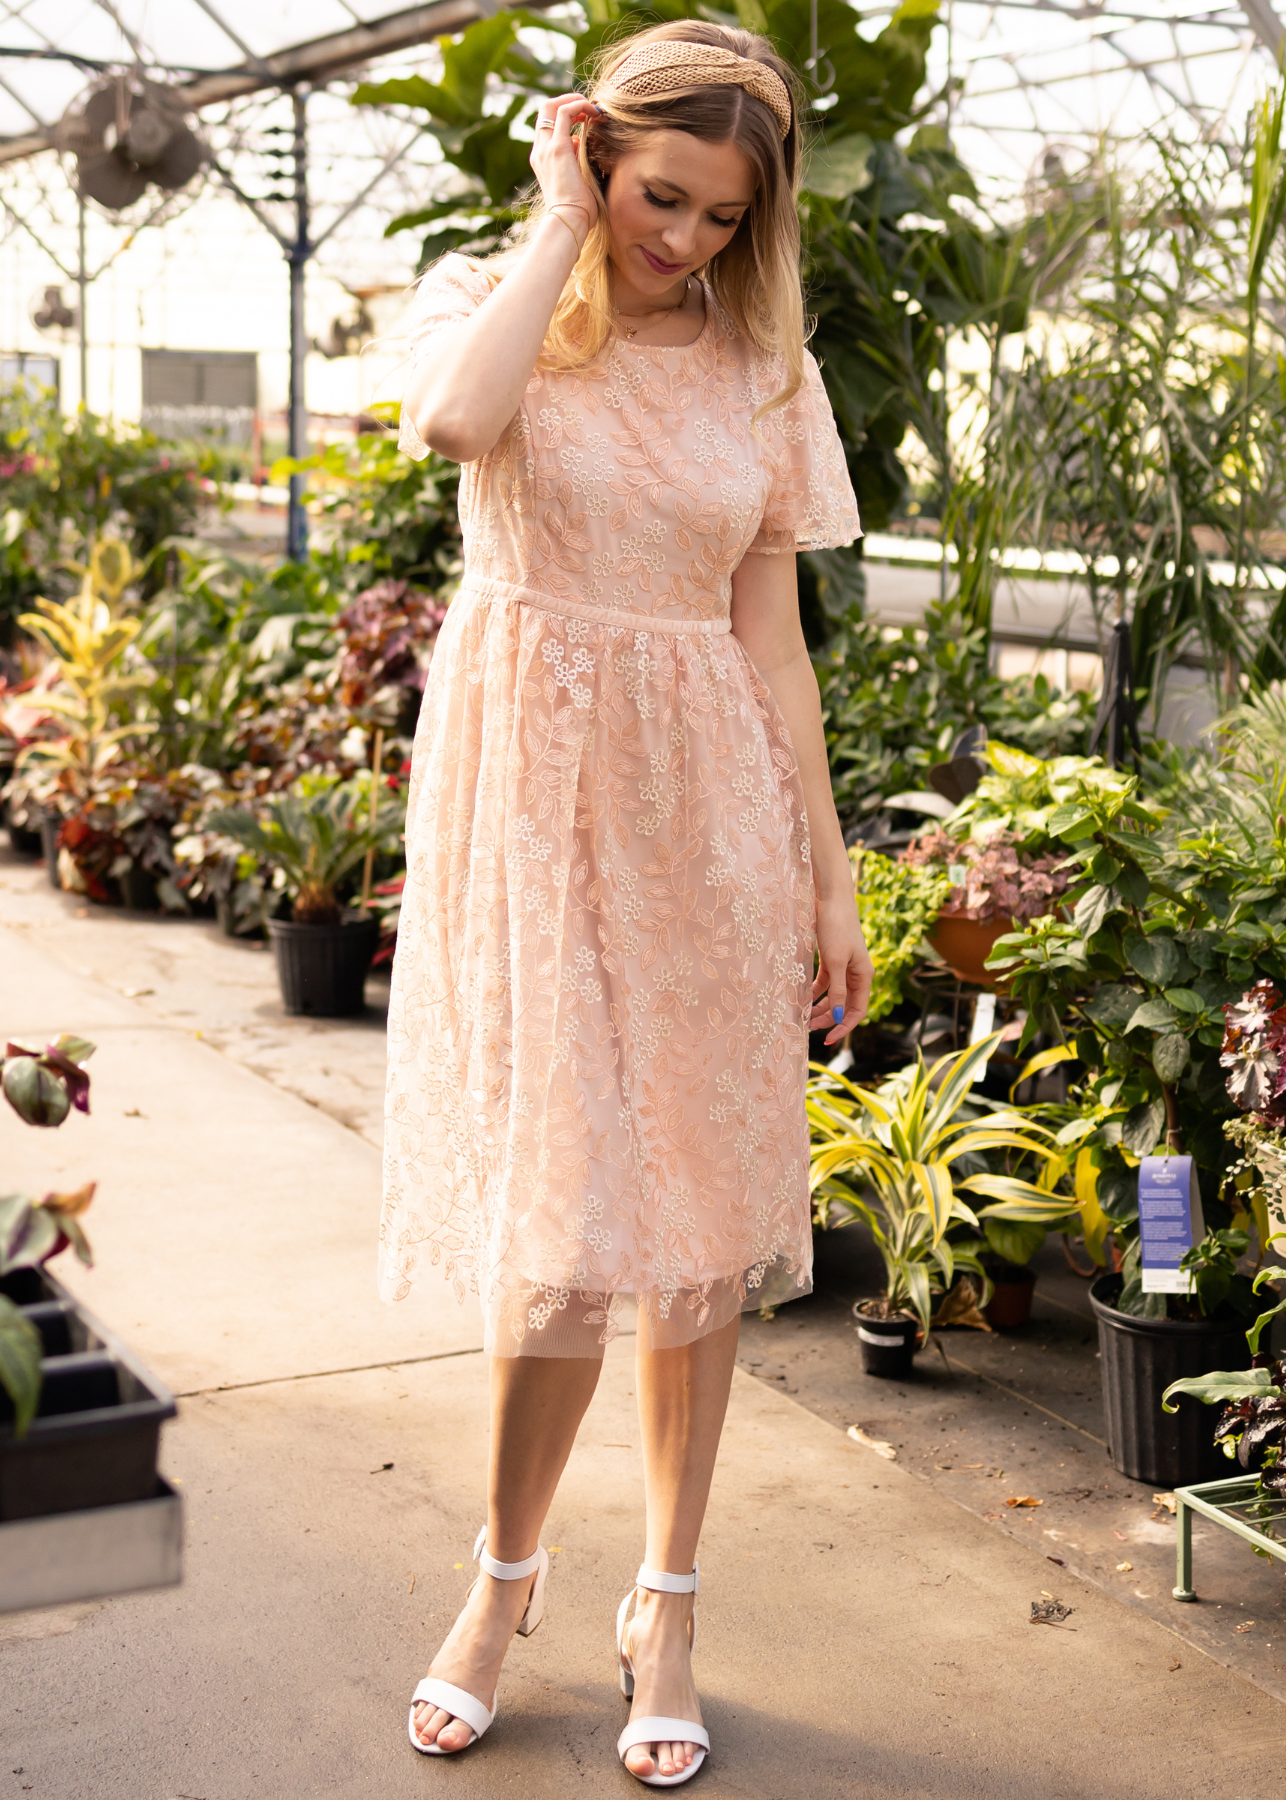 Peach floral dress